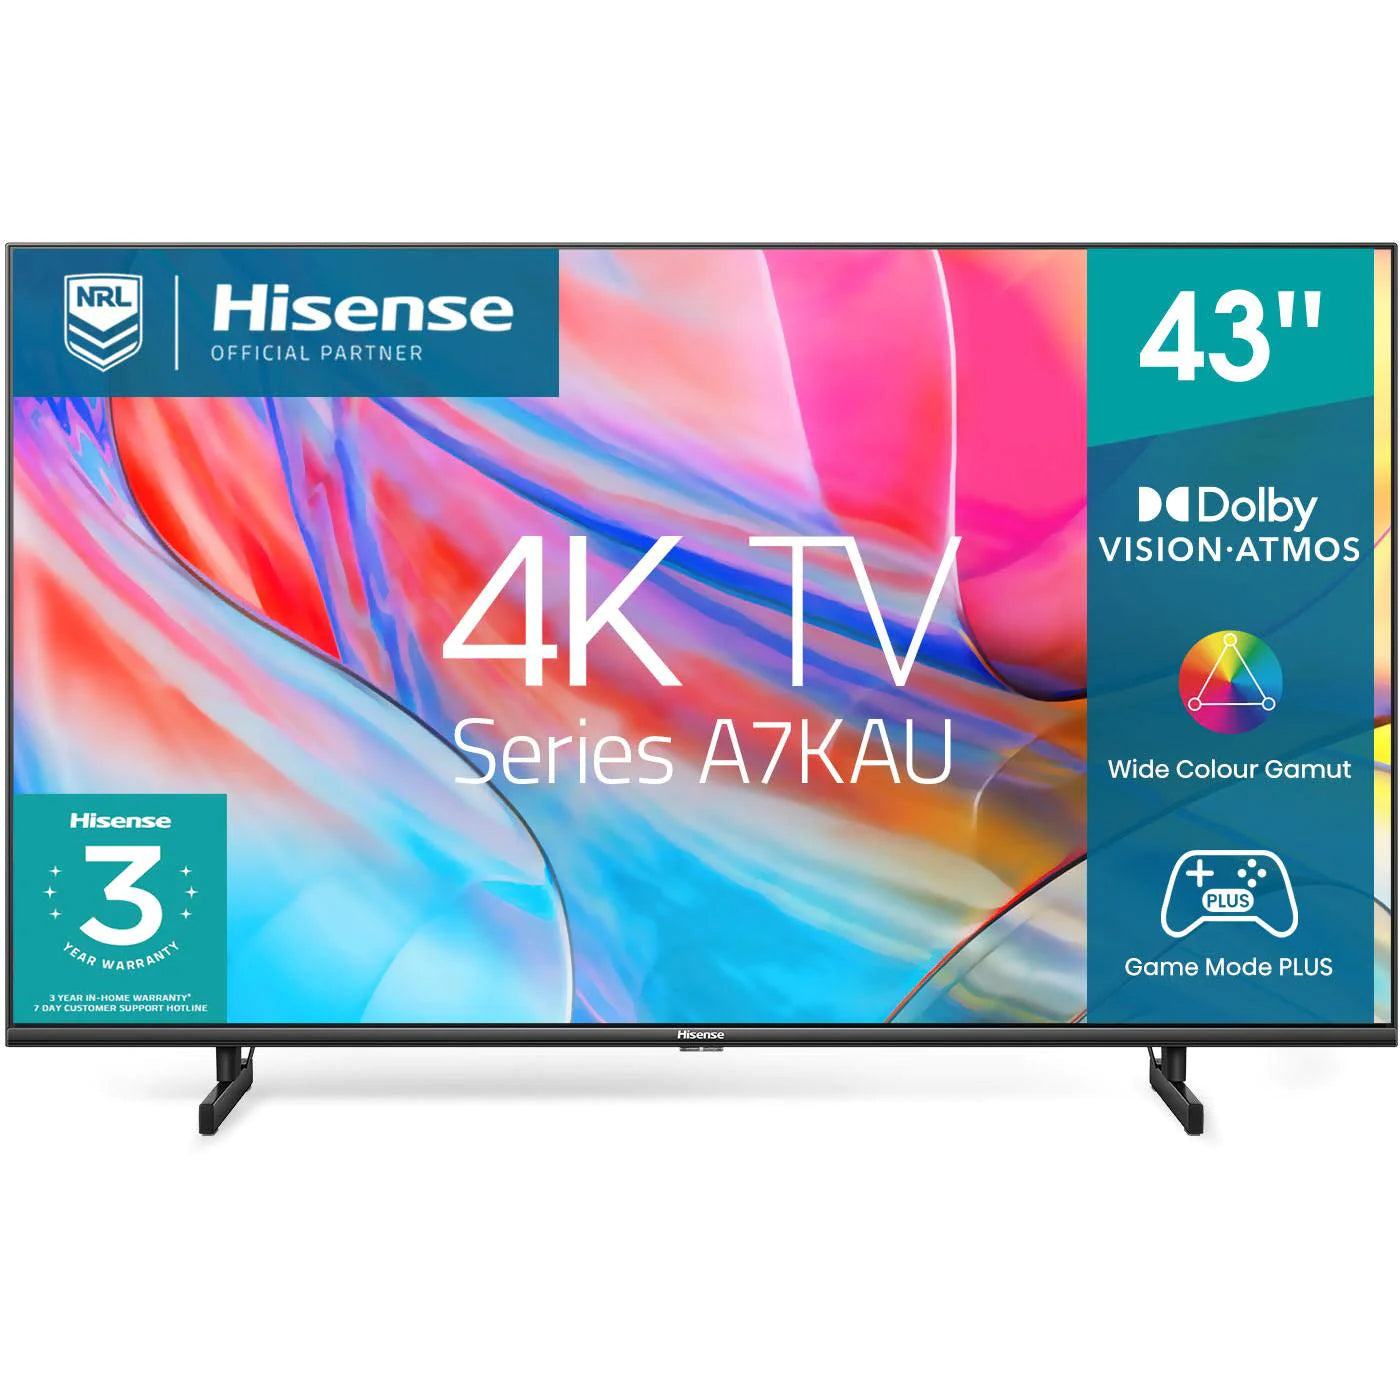 Hisense 43" 4K UHD LED Smart TV